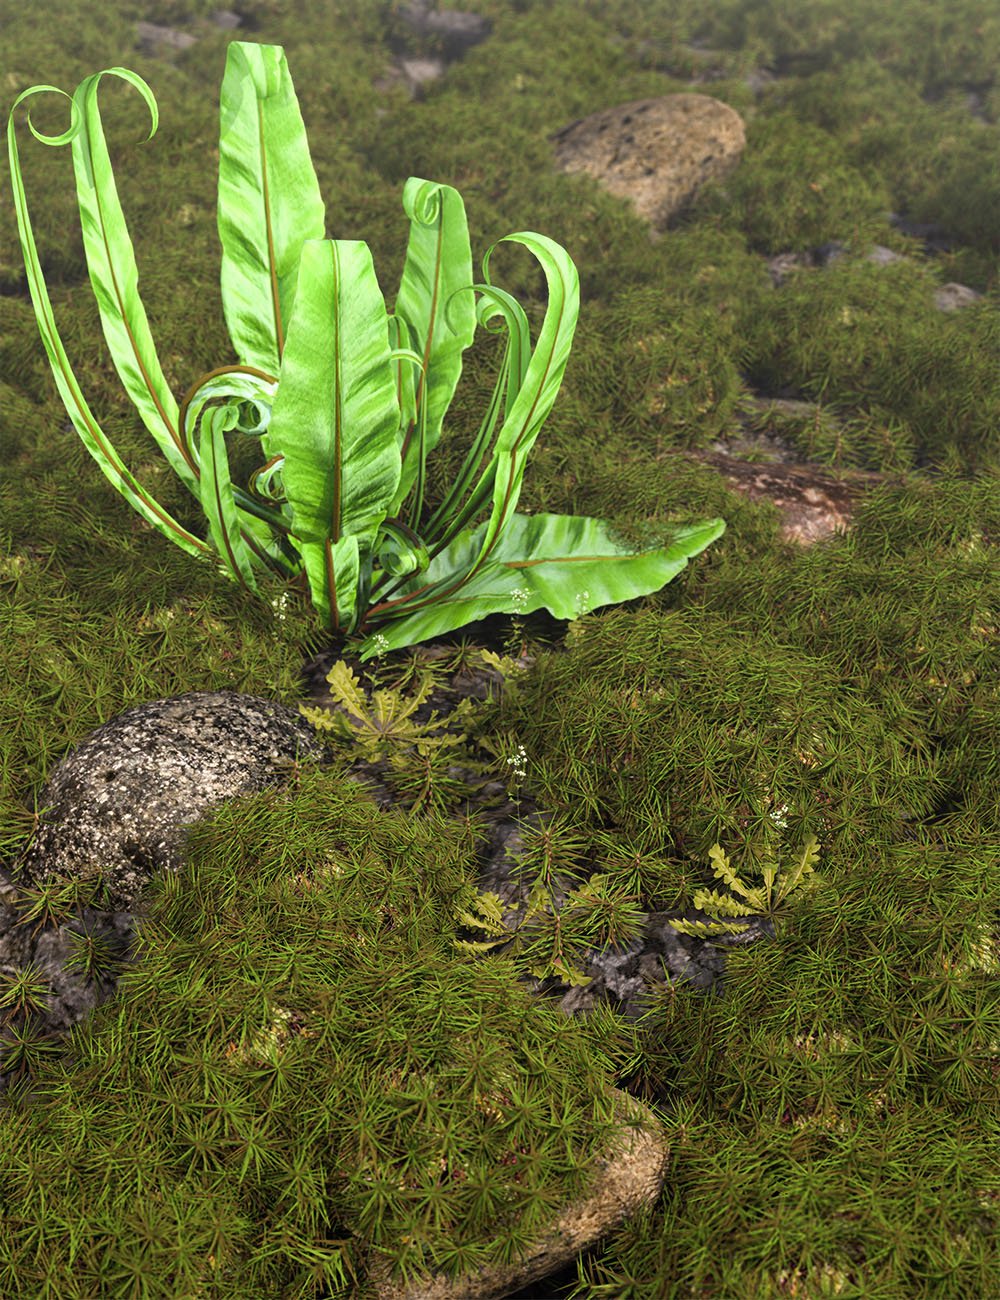 Tiny Plants vol 2 - Moss by: MartinJFrost, 3D Models by Daz 3D